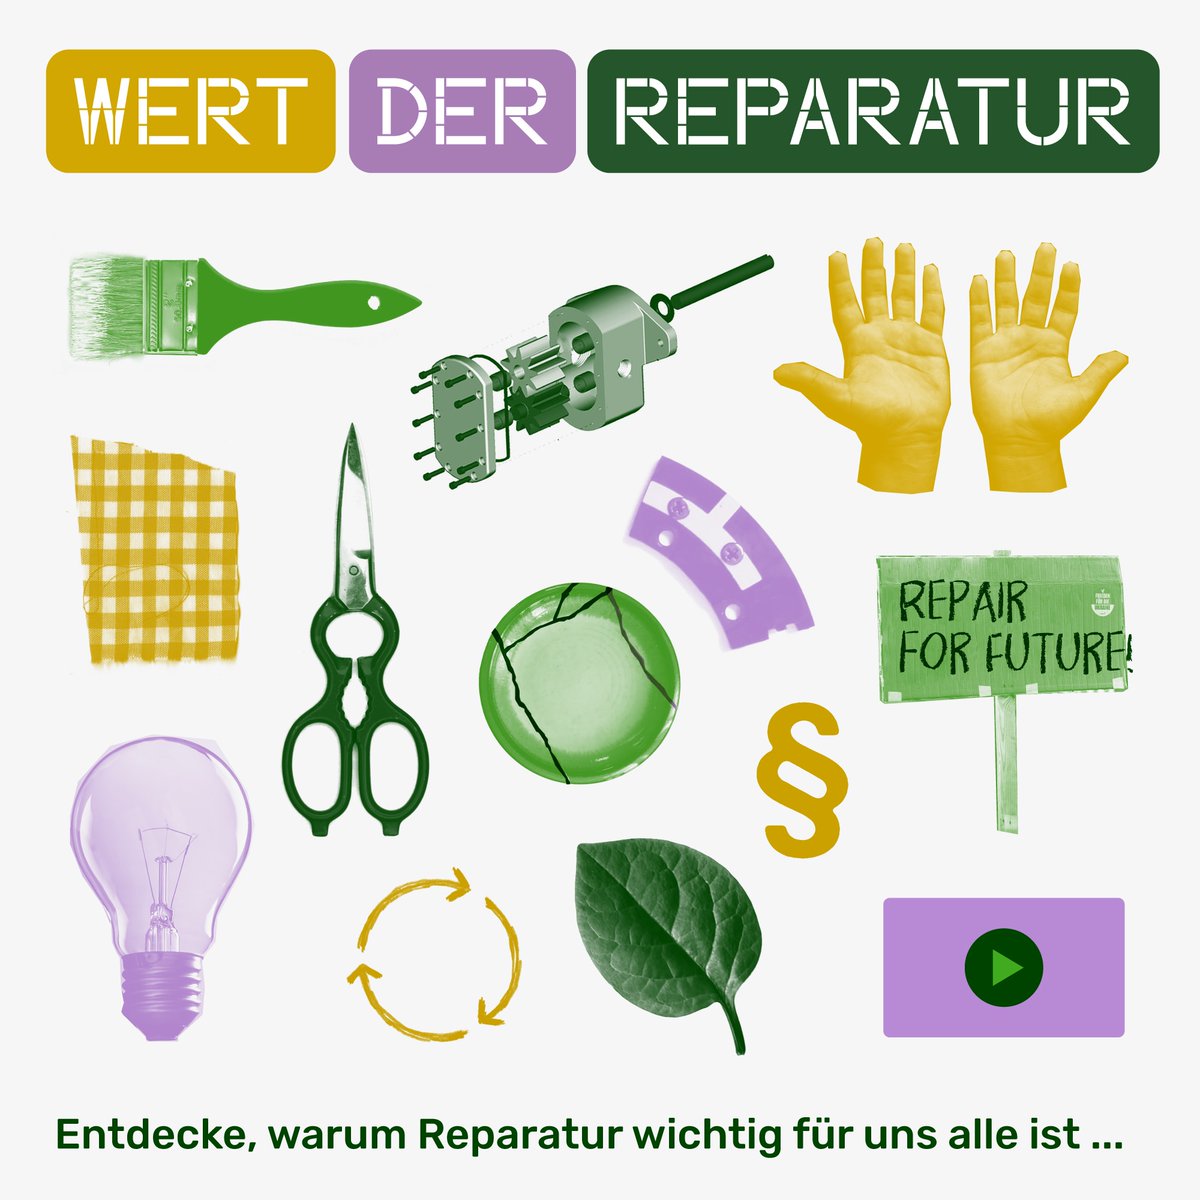 ALLES MÜLL?! Die Kampagne #WertderReparatur verdeutlicht, welche Rolle die Reparatur in unserer Gesellschaft spielt und warum wir dringend ein starkes #RechtaufReparatur benötigen 
👉wert-der-reparatur.de